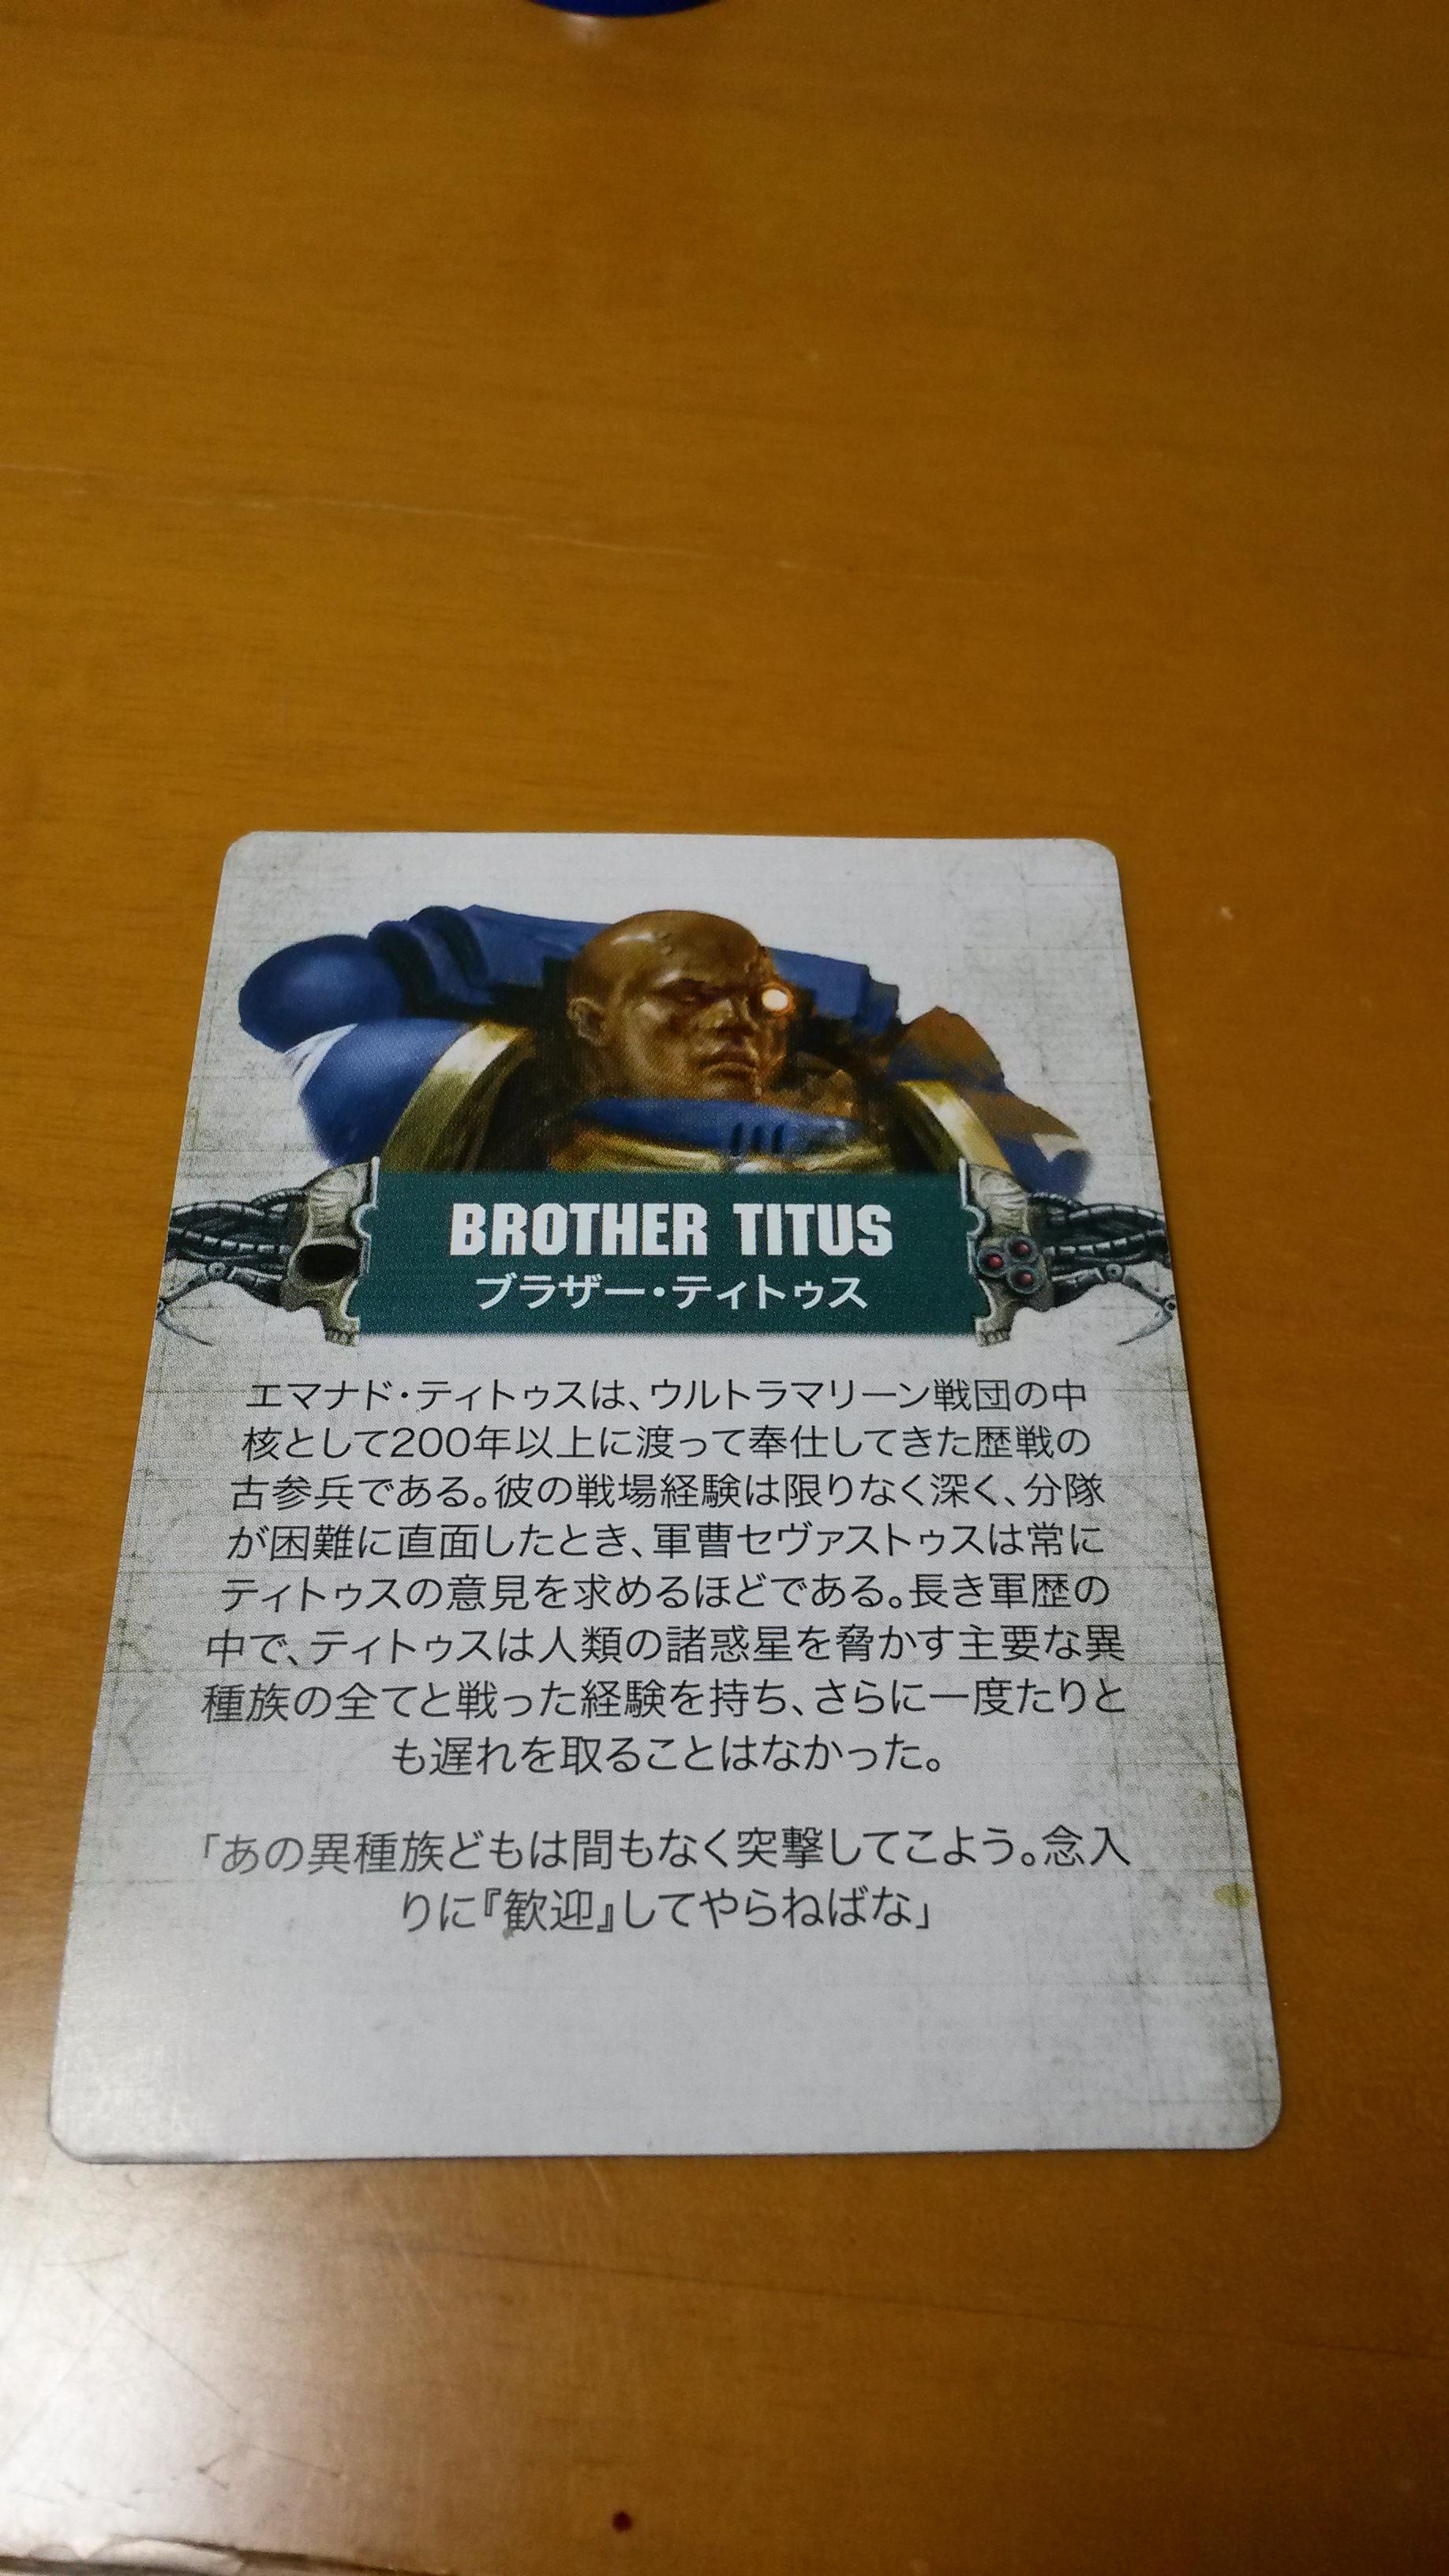 Brother Titus' s bio card